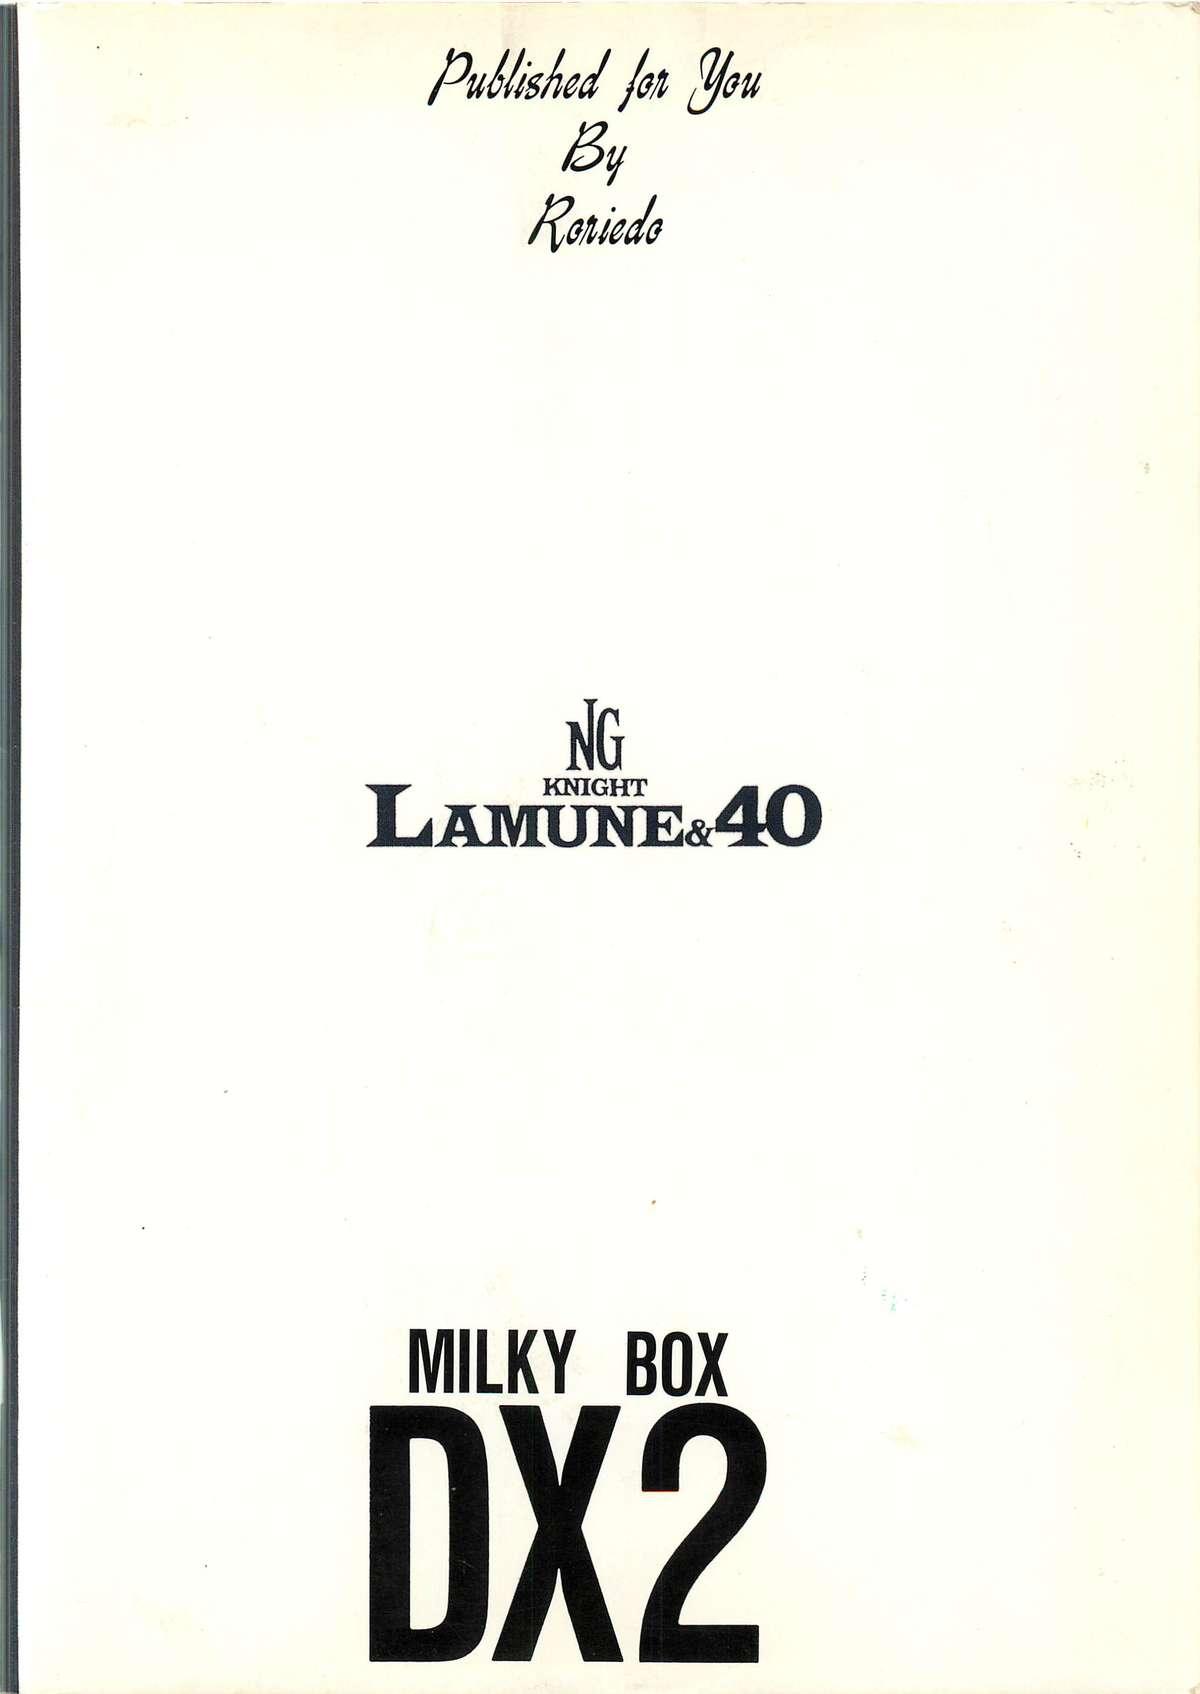 Francaise MILKY BOX DX2 - Ng knight lamune and 40 Polish - Page 73